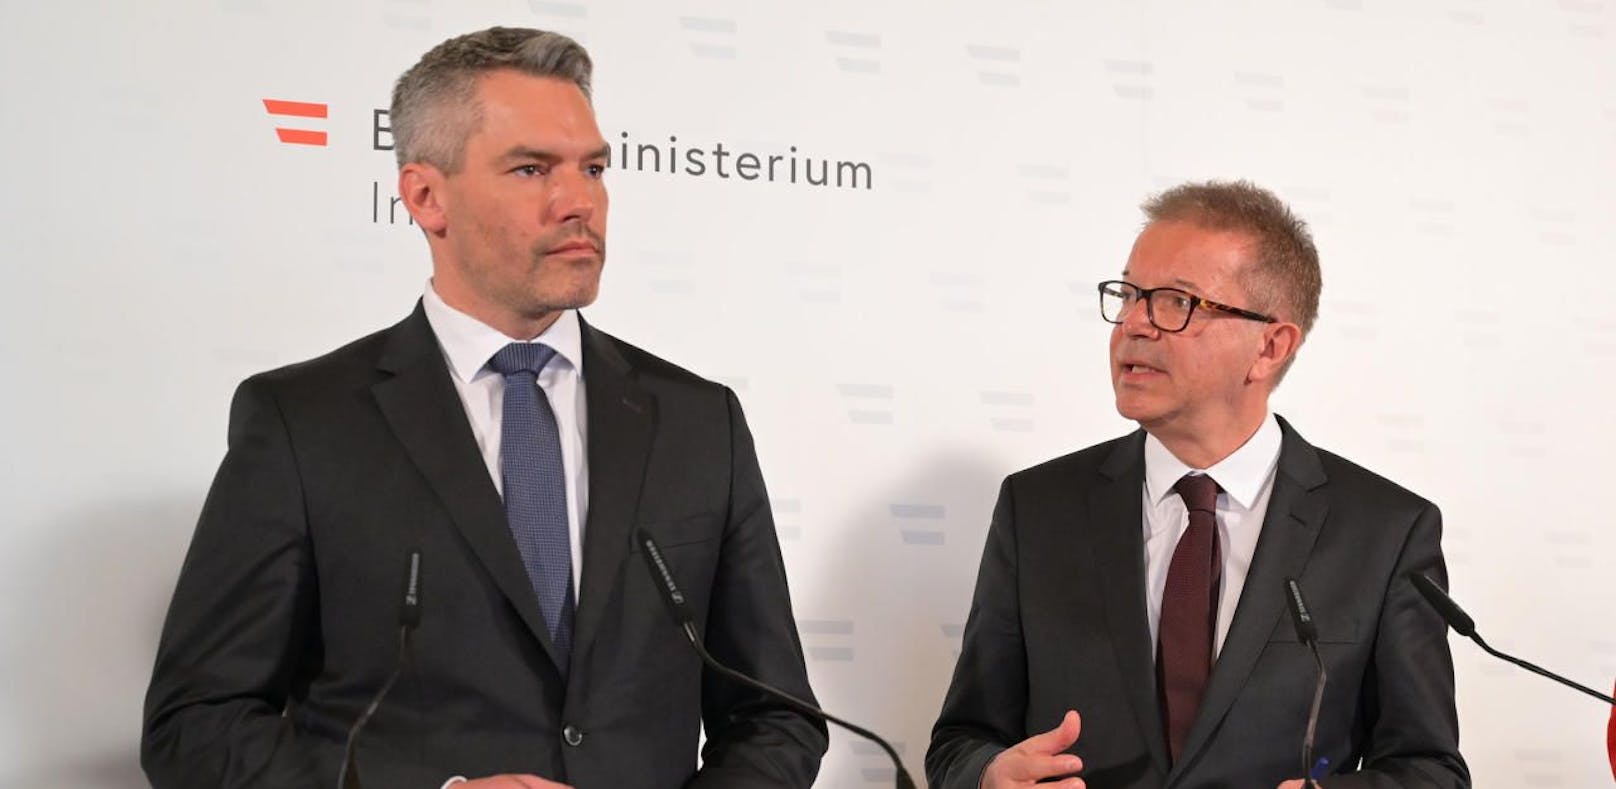 Innenminister Karl Nehammer (ÖVP) und Gesundheitsminister Rudi Anschober (Grüne).